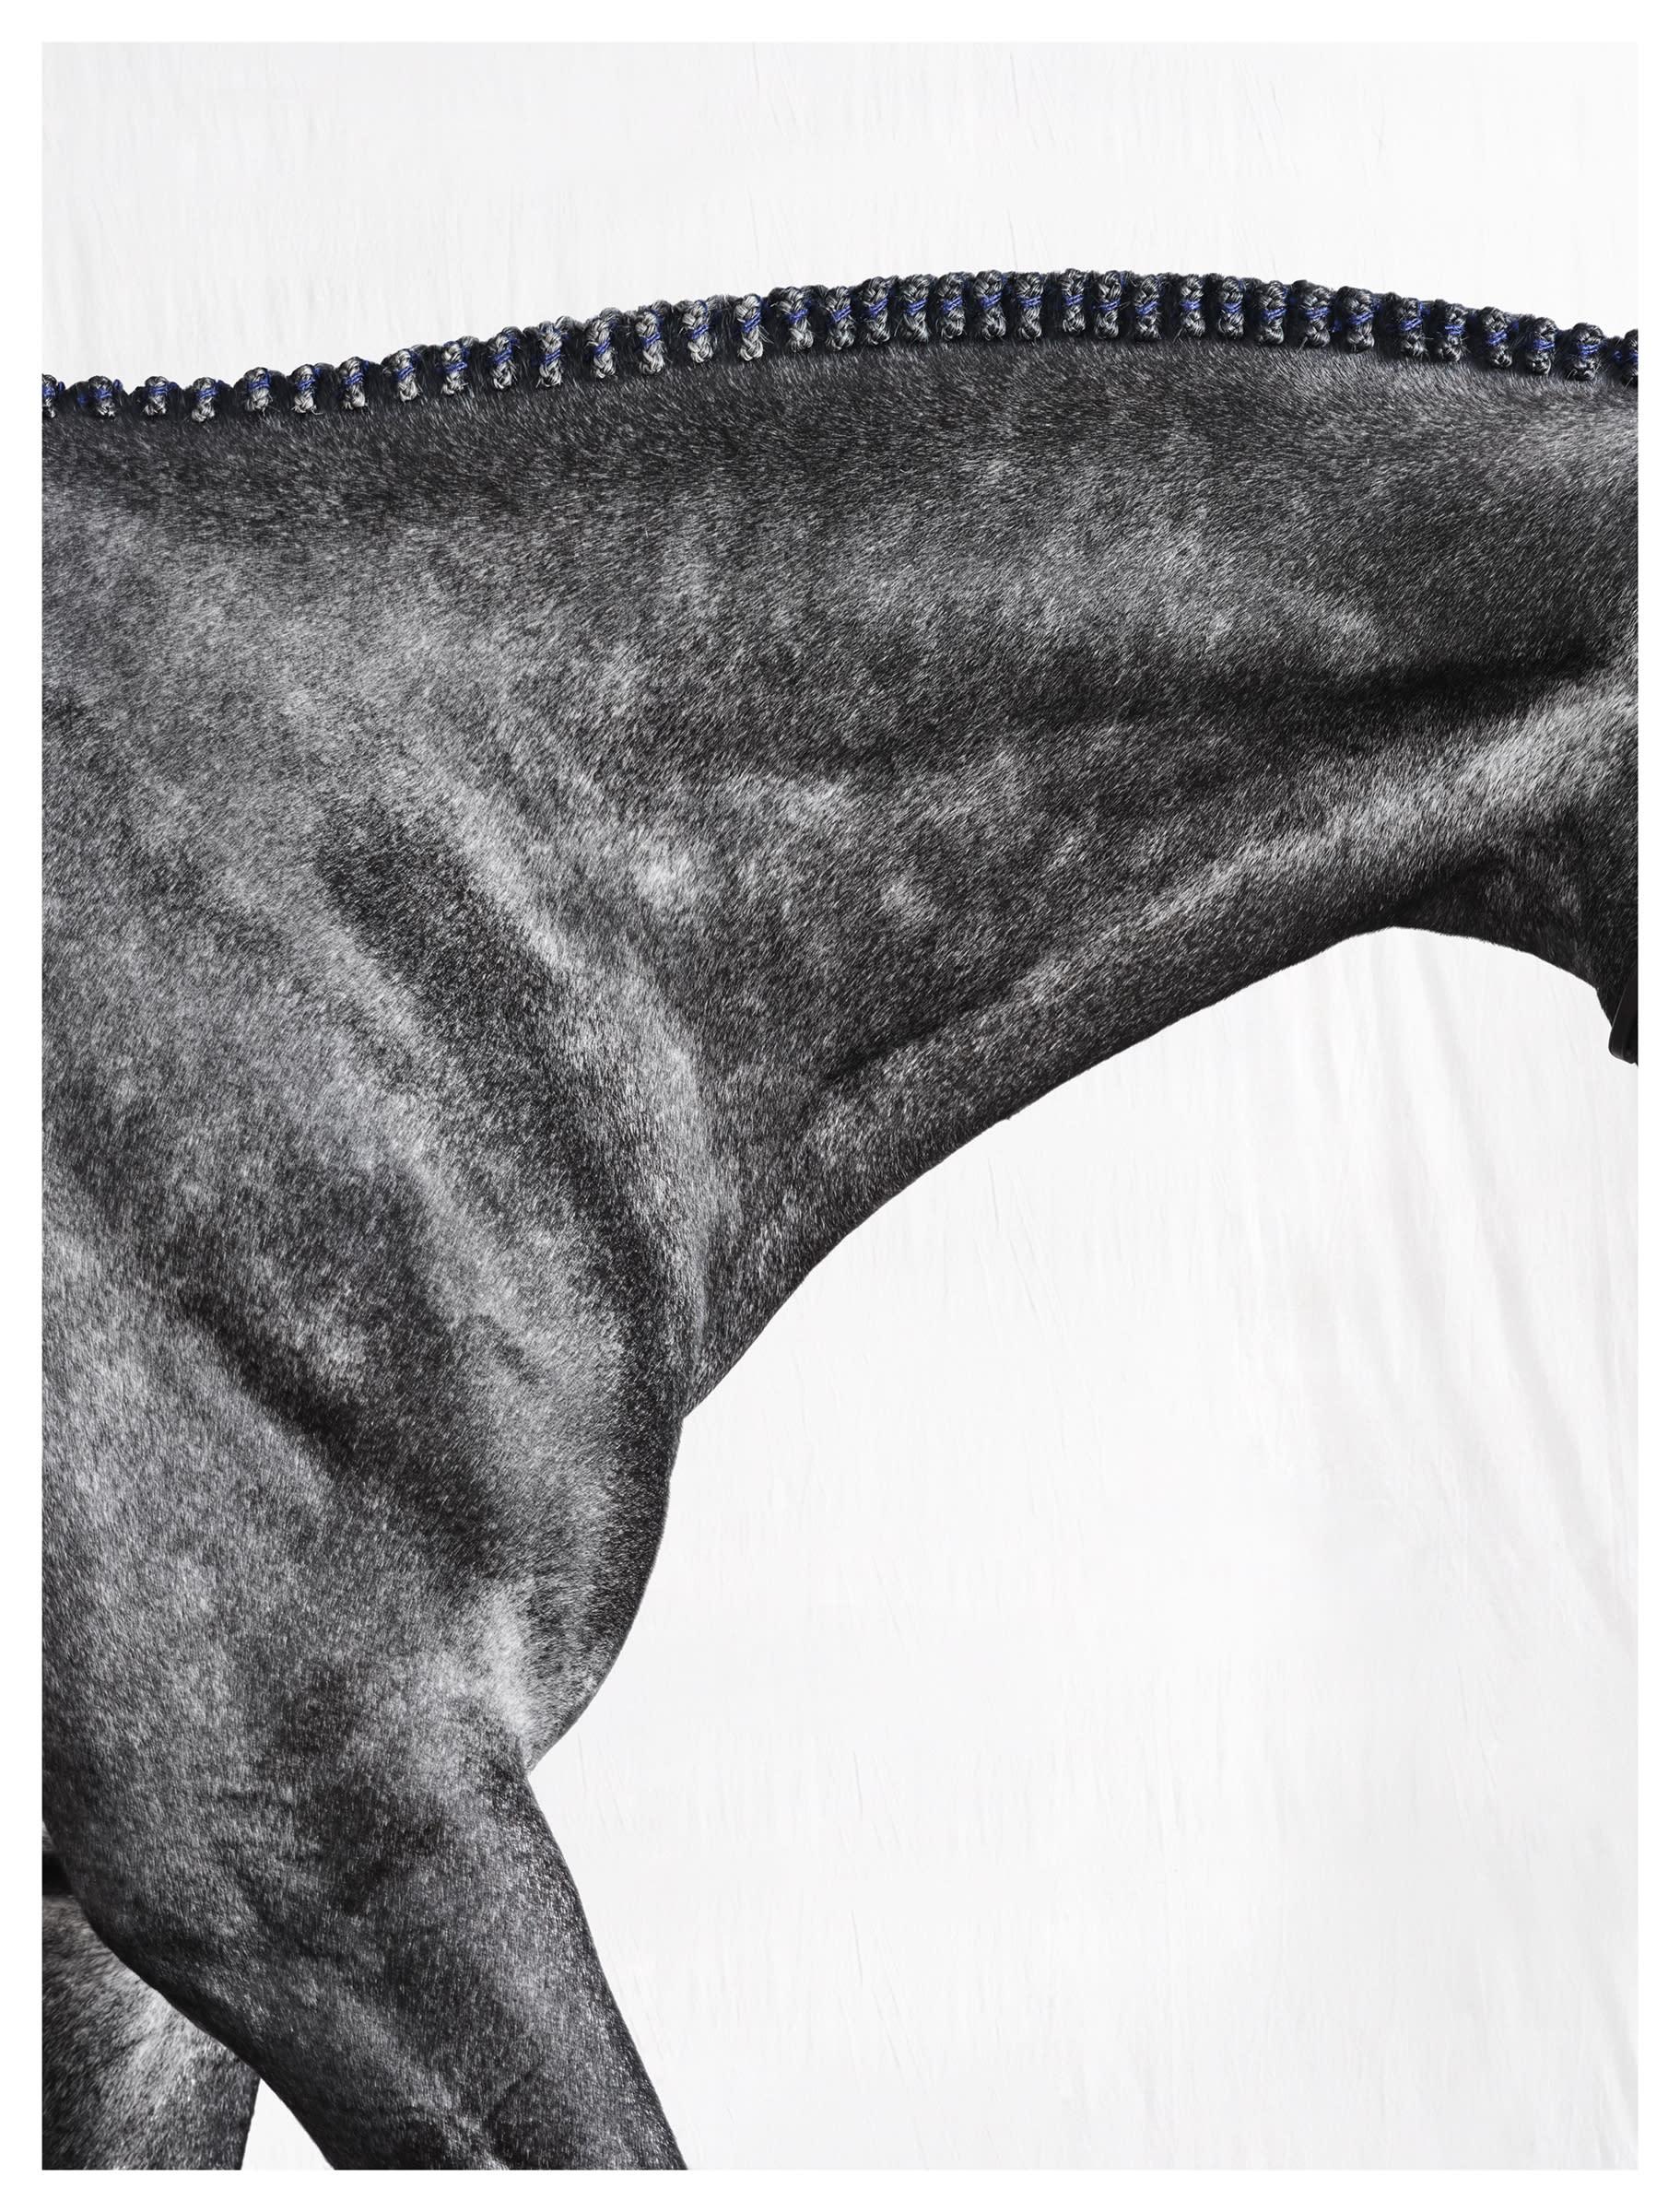 Abstract Photograph Juan Lamarca - Optimist I - Portrait de cheval en noir et blanc en édition limitée, 2015